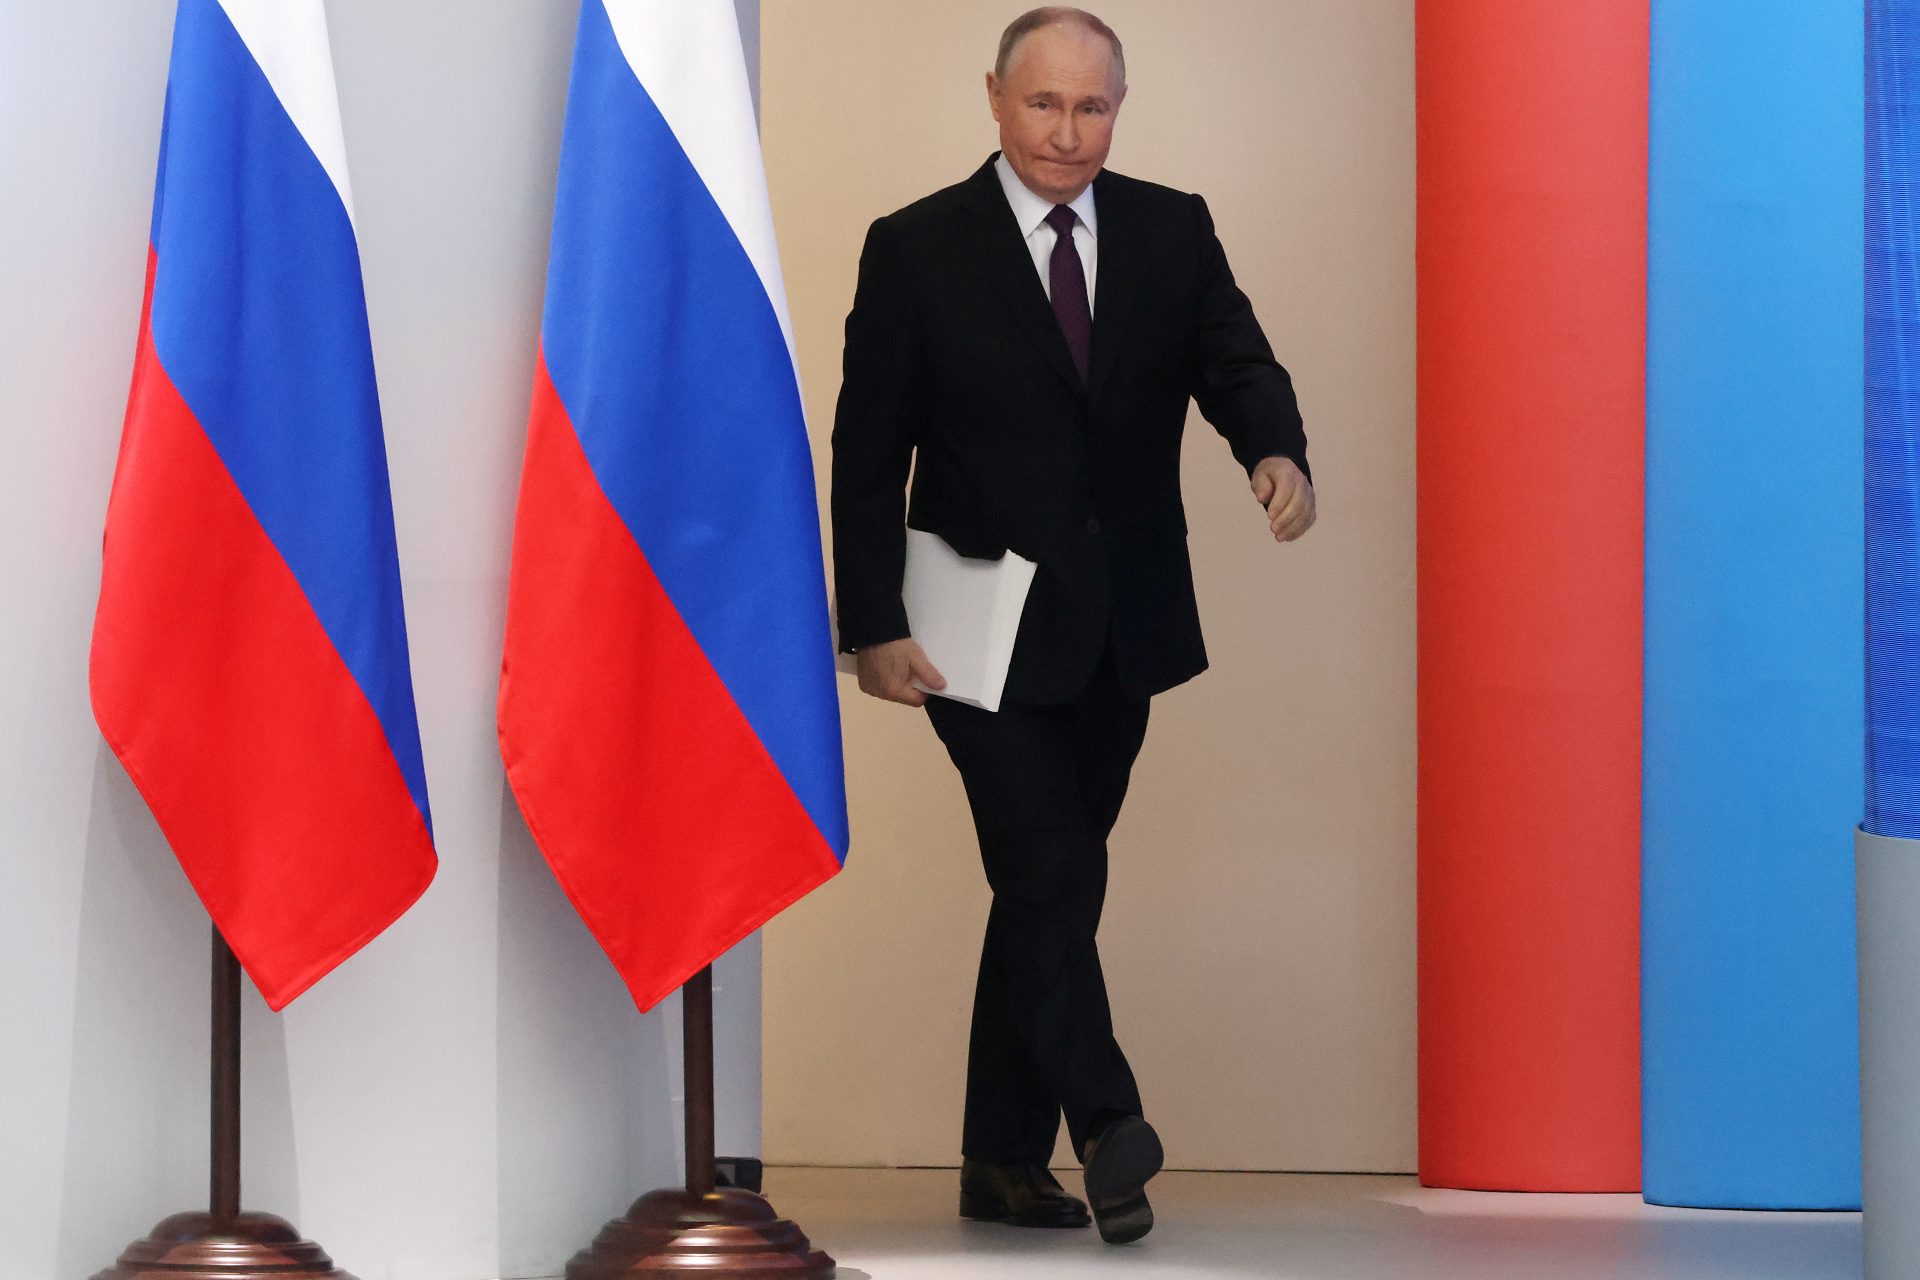 Putin äußerte in seiner besorgniserregenden neuen Rede eine bedrohliche nukleare Drohung